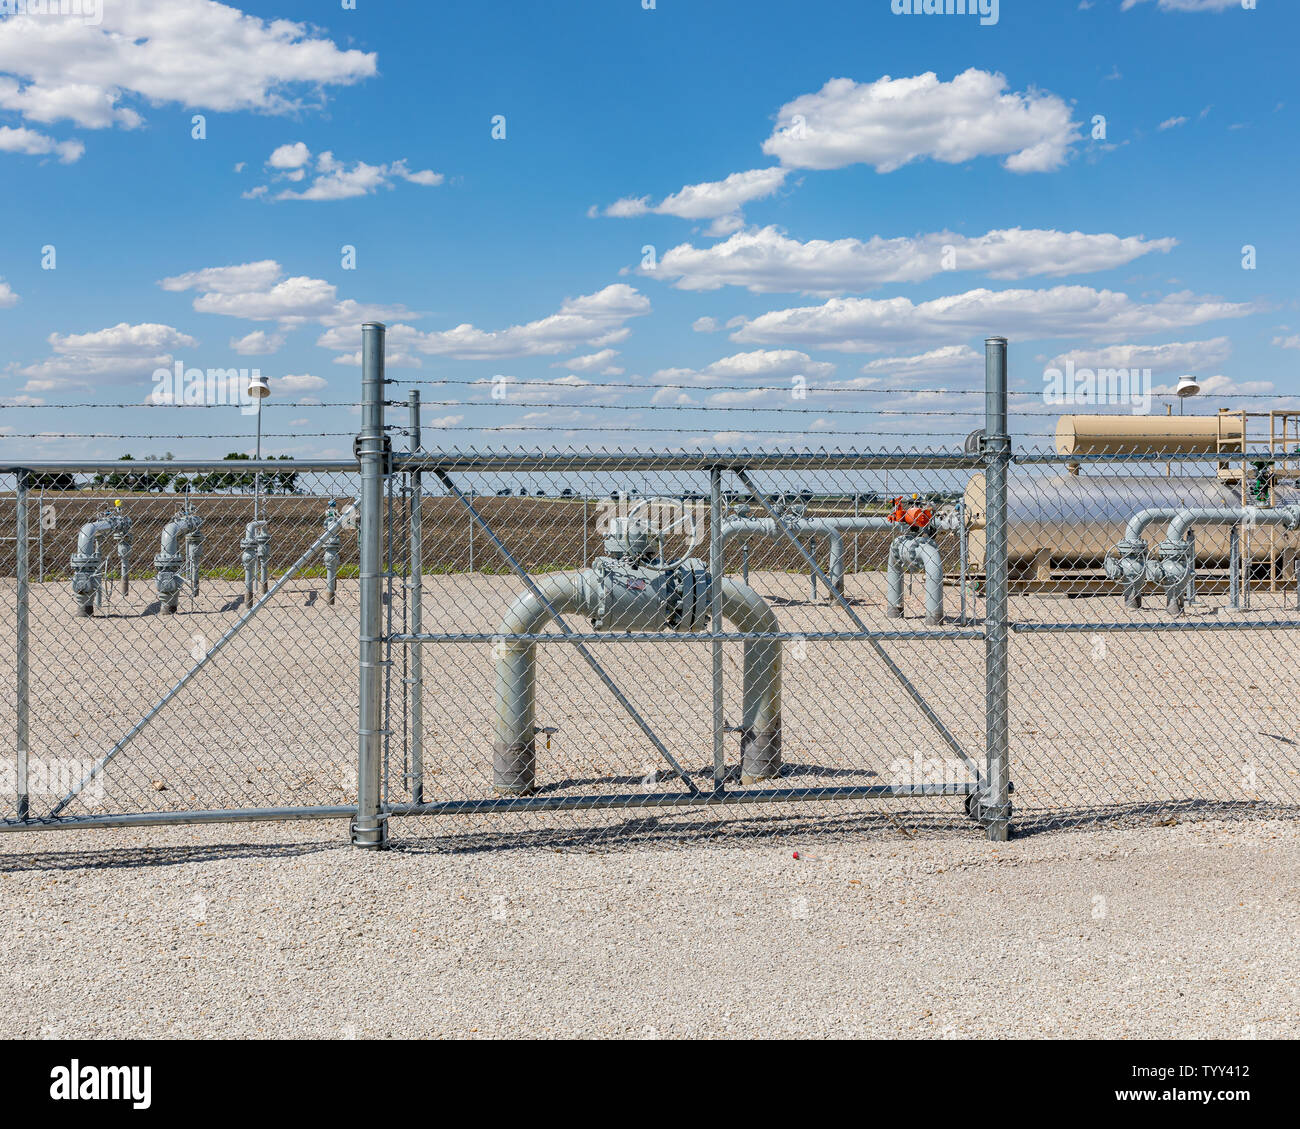 Verteilungsanlagen für Erdgasfernleitungen. Sicherheit der Energieinfrastruktur, Sicherheit und Konzept für fossile Brennstoffe. Stockfoto